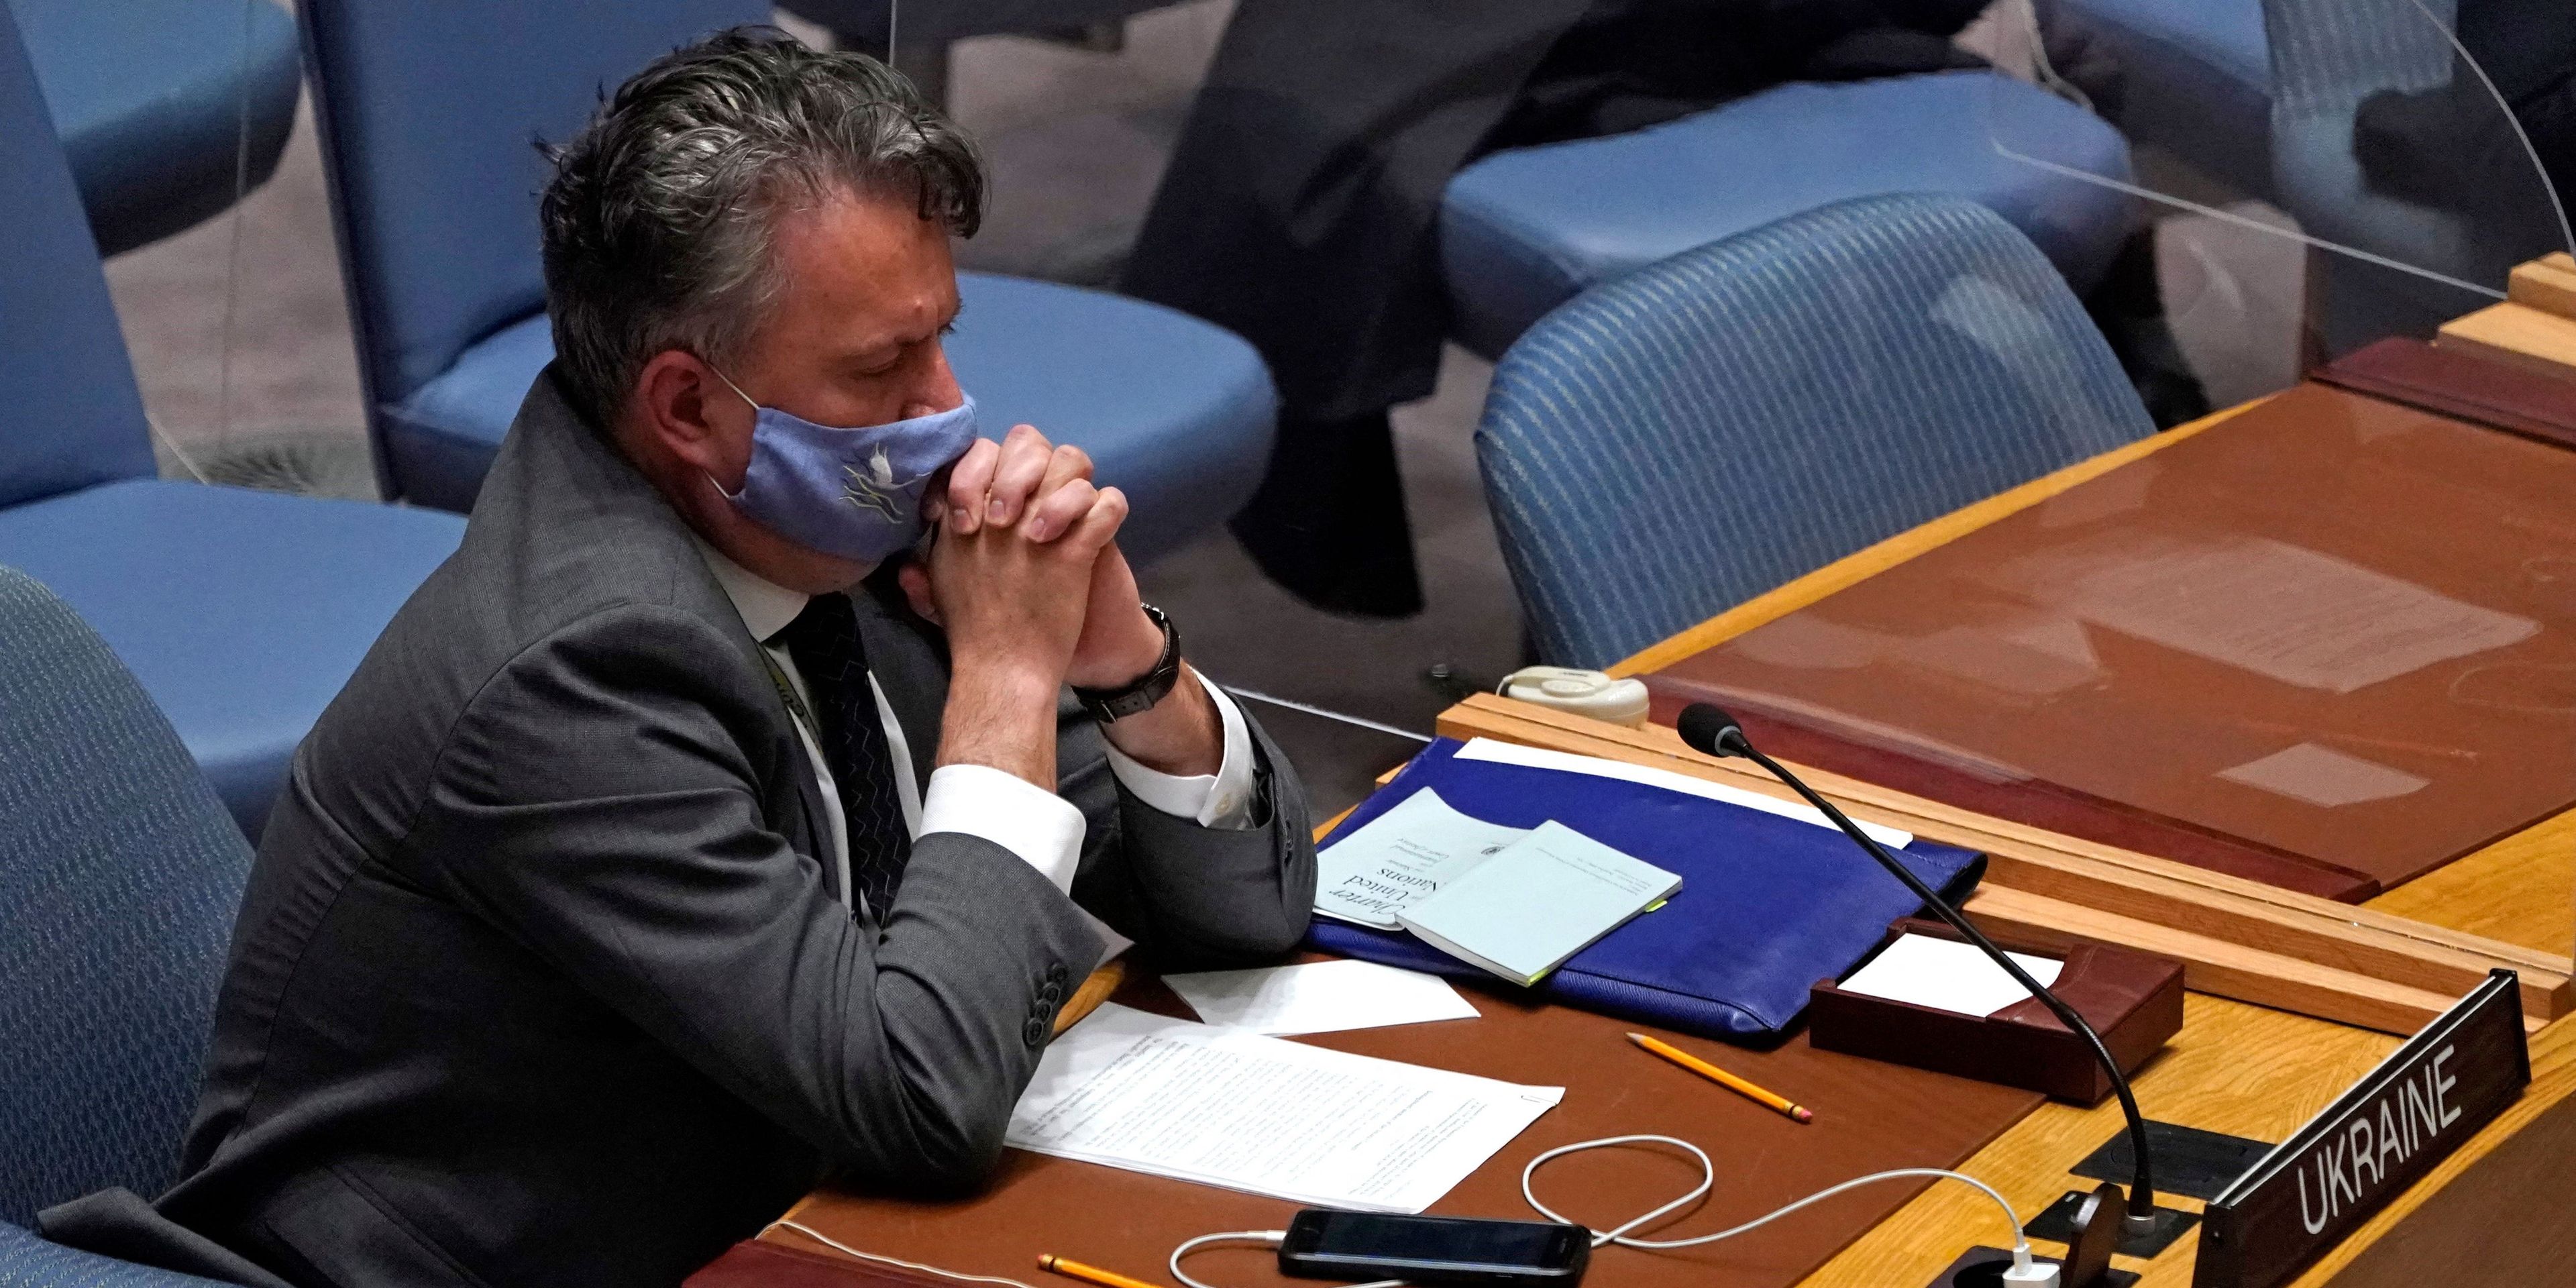 El representante permanente de Ucrania ante la ONU, Serhii Kislitsia, asiste a una reunión de emergencia del Consejo de Seguridad de la ONU sobre Ucrania